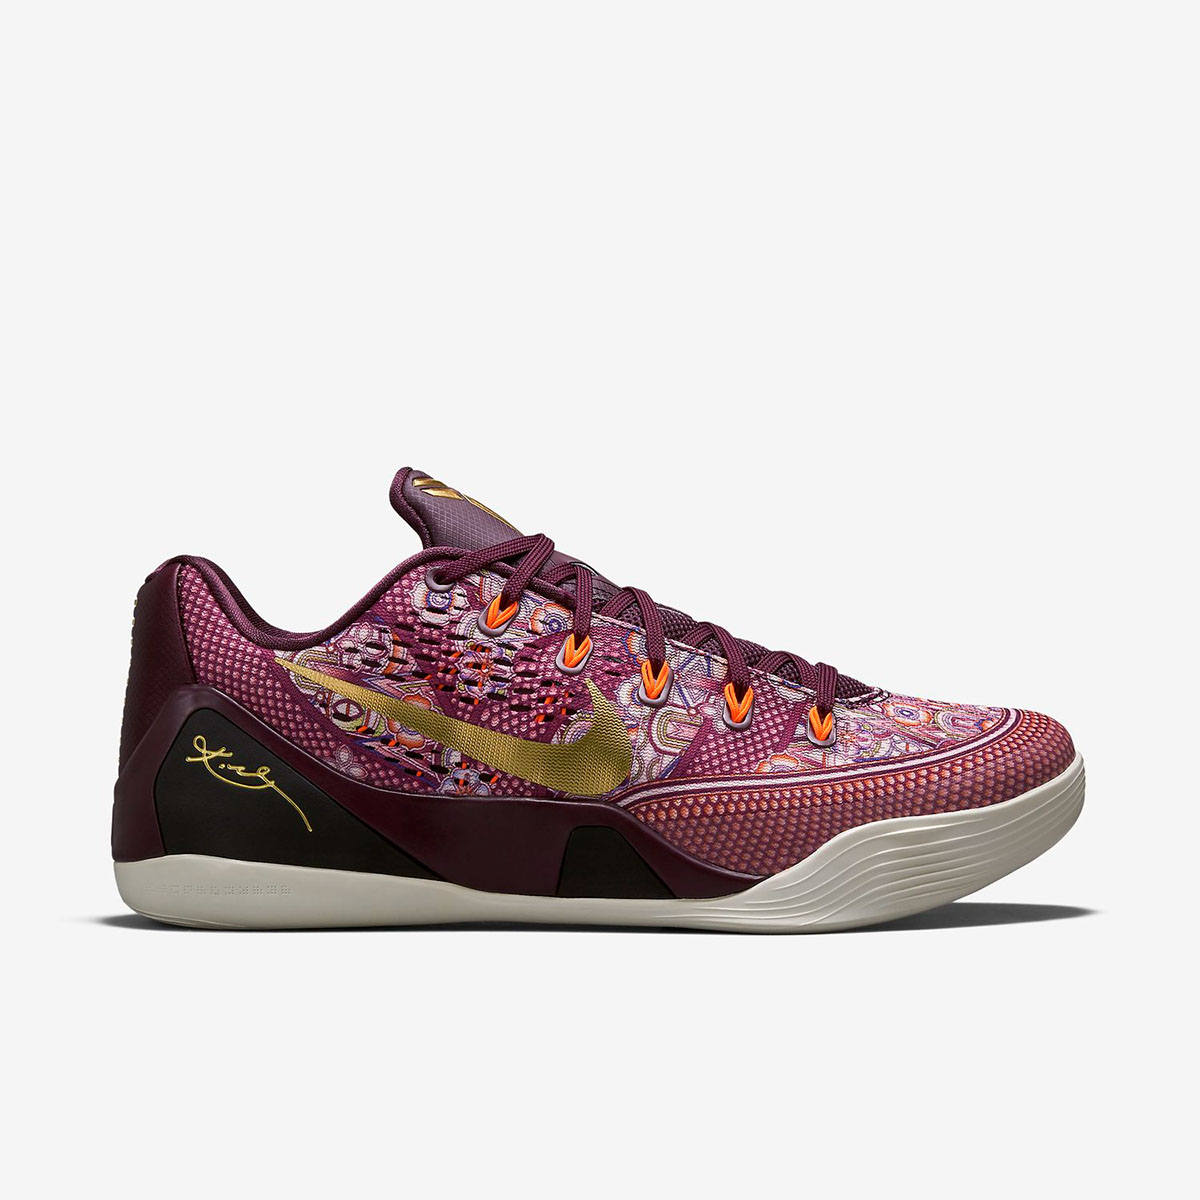 Nike: Kobe IX EM “Silk” on Behance